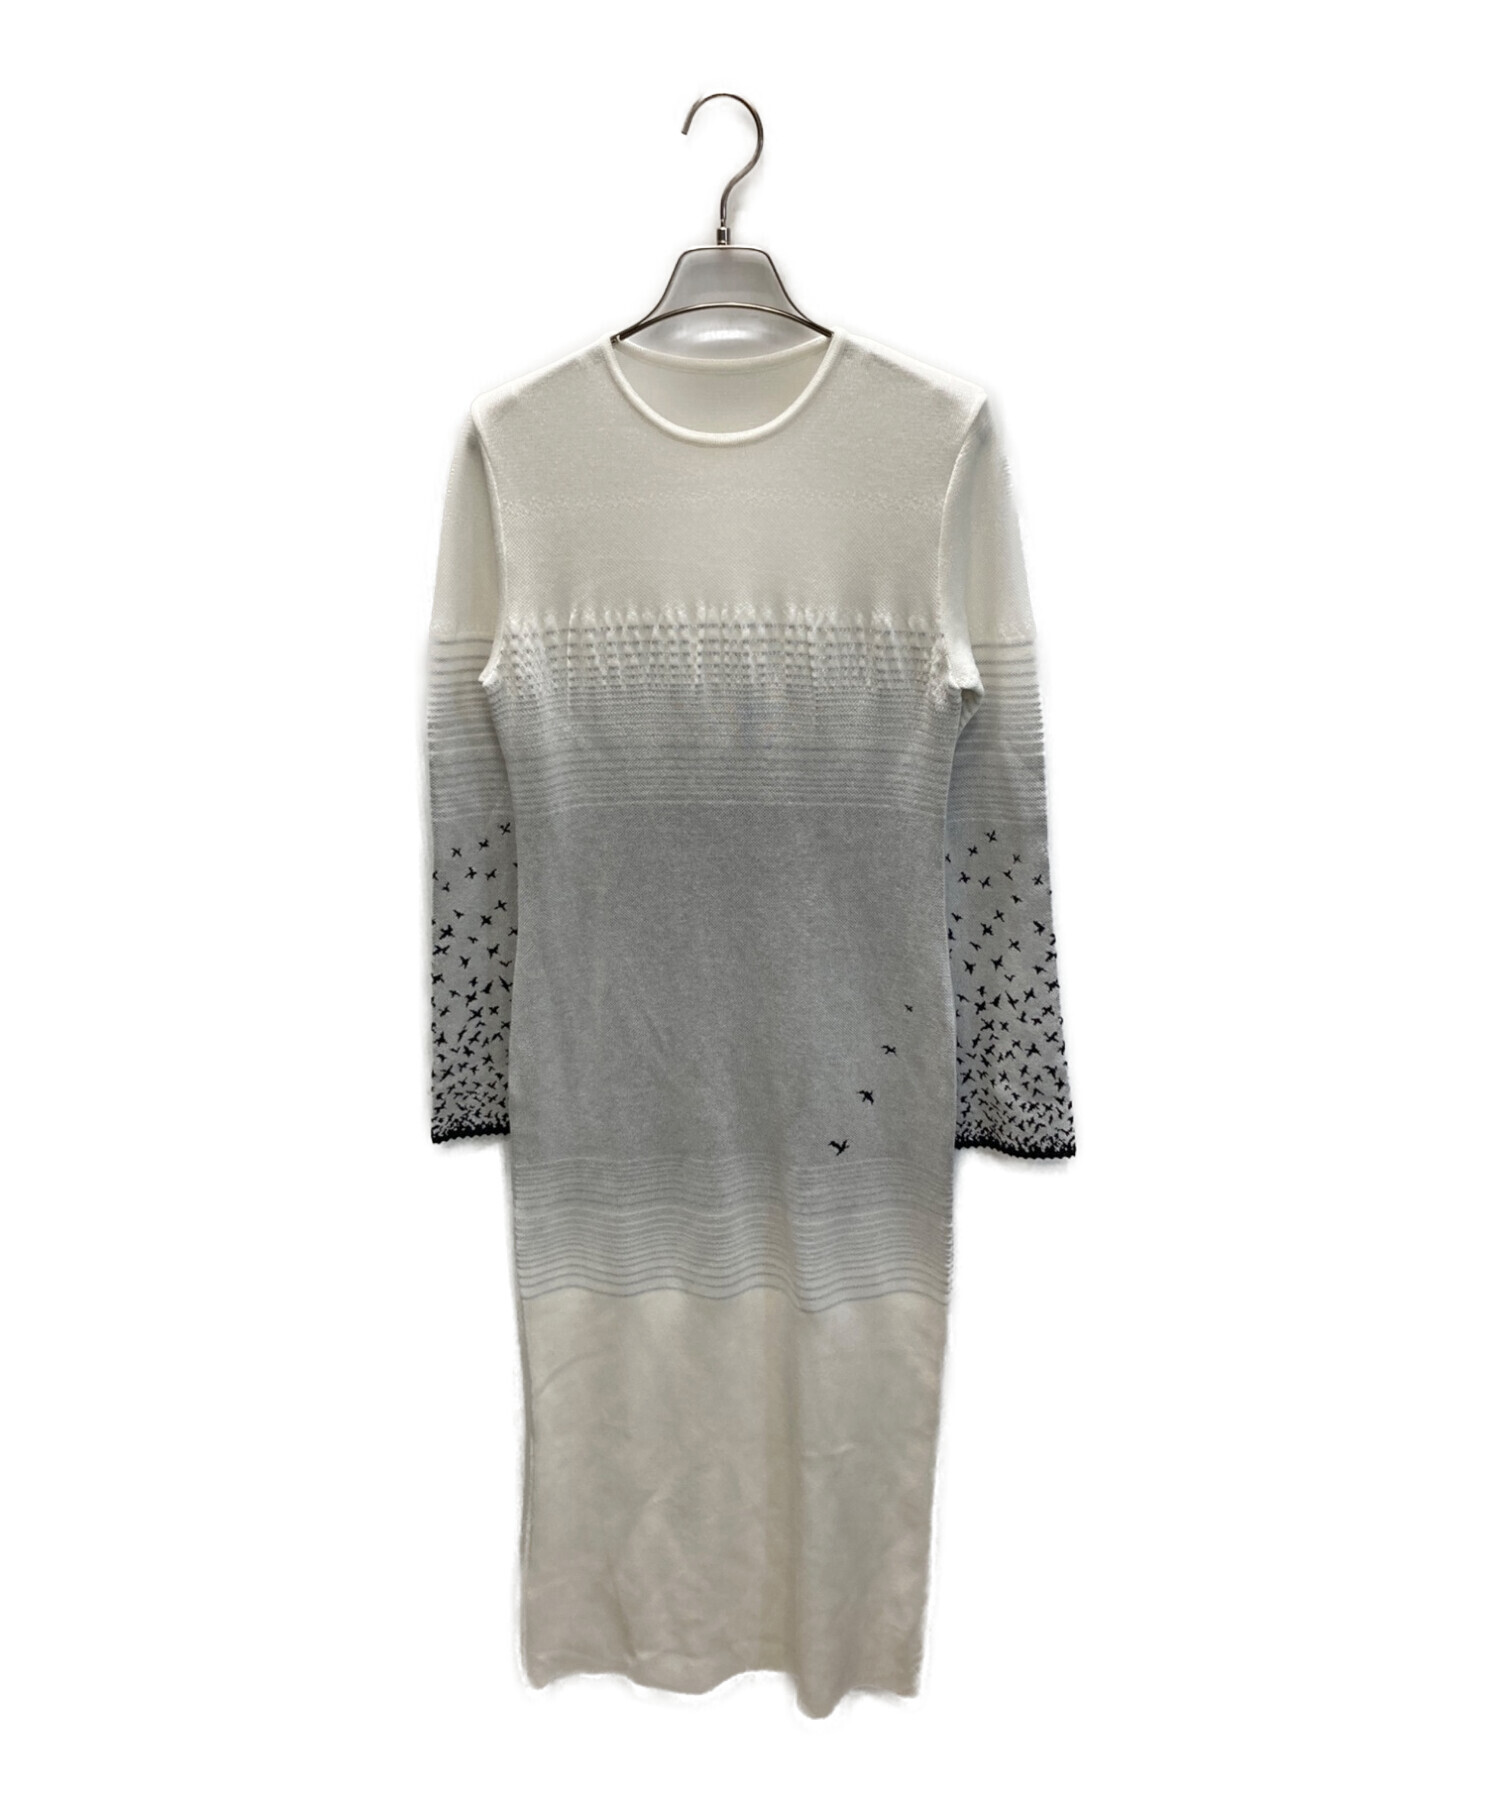 Crane Pattern Jacquard Knitted Dress